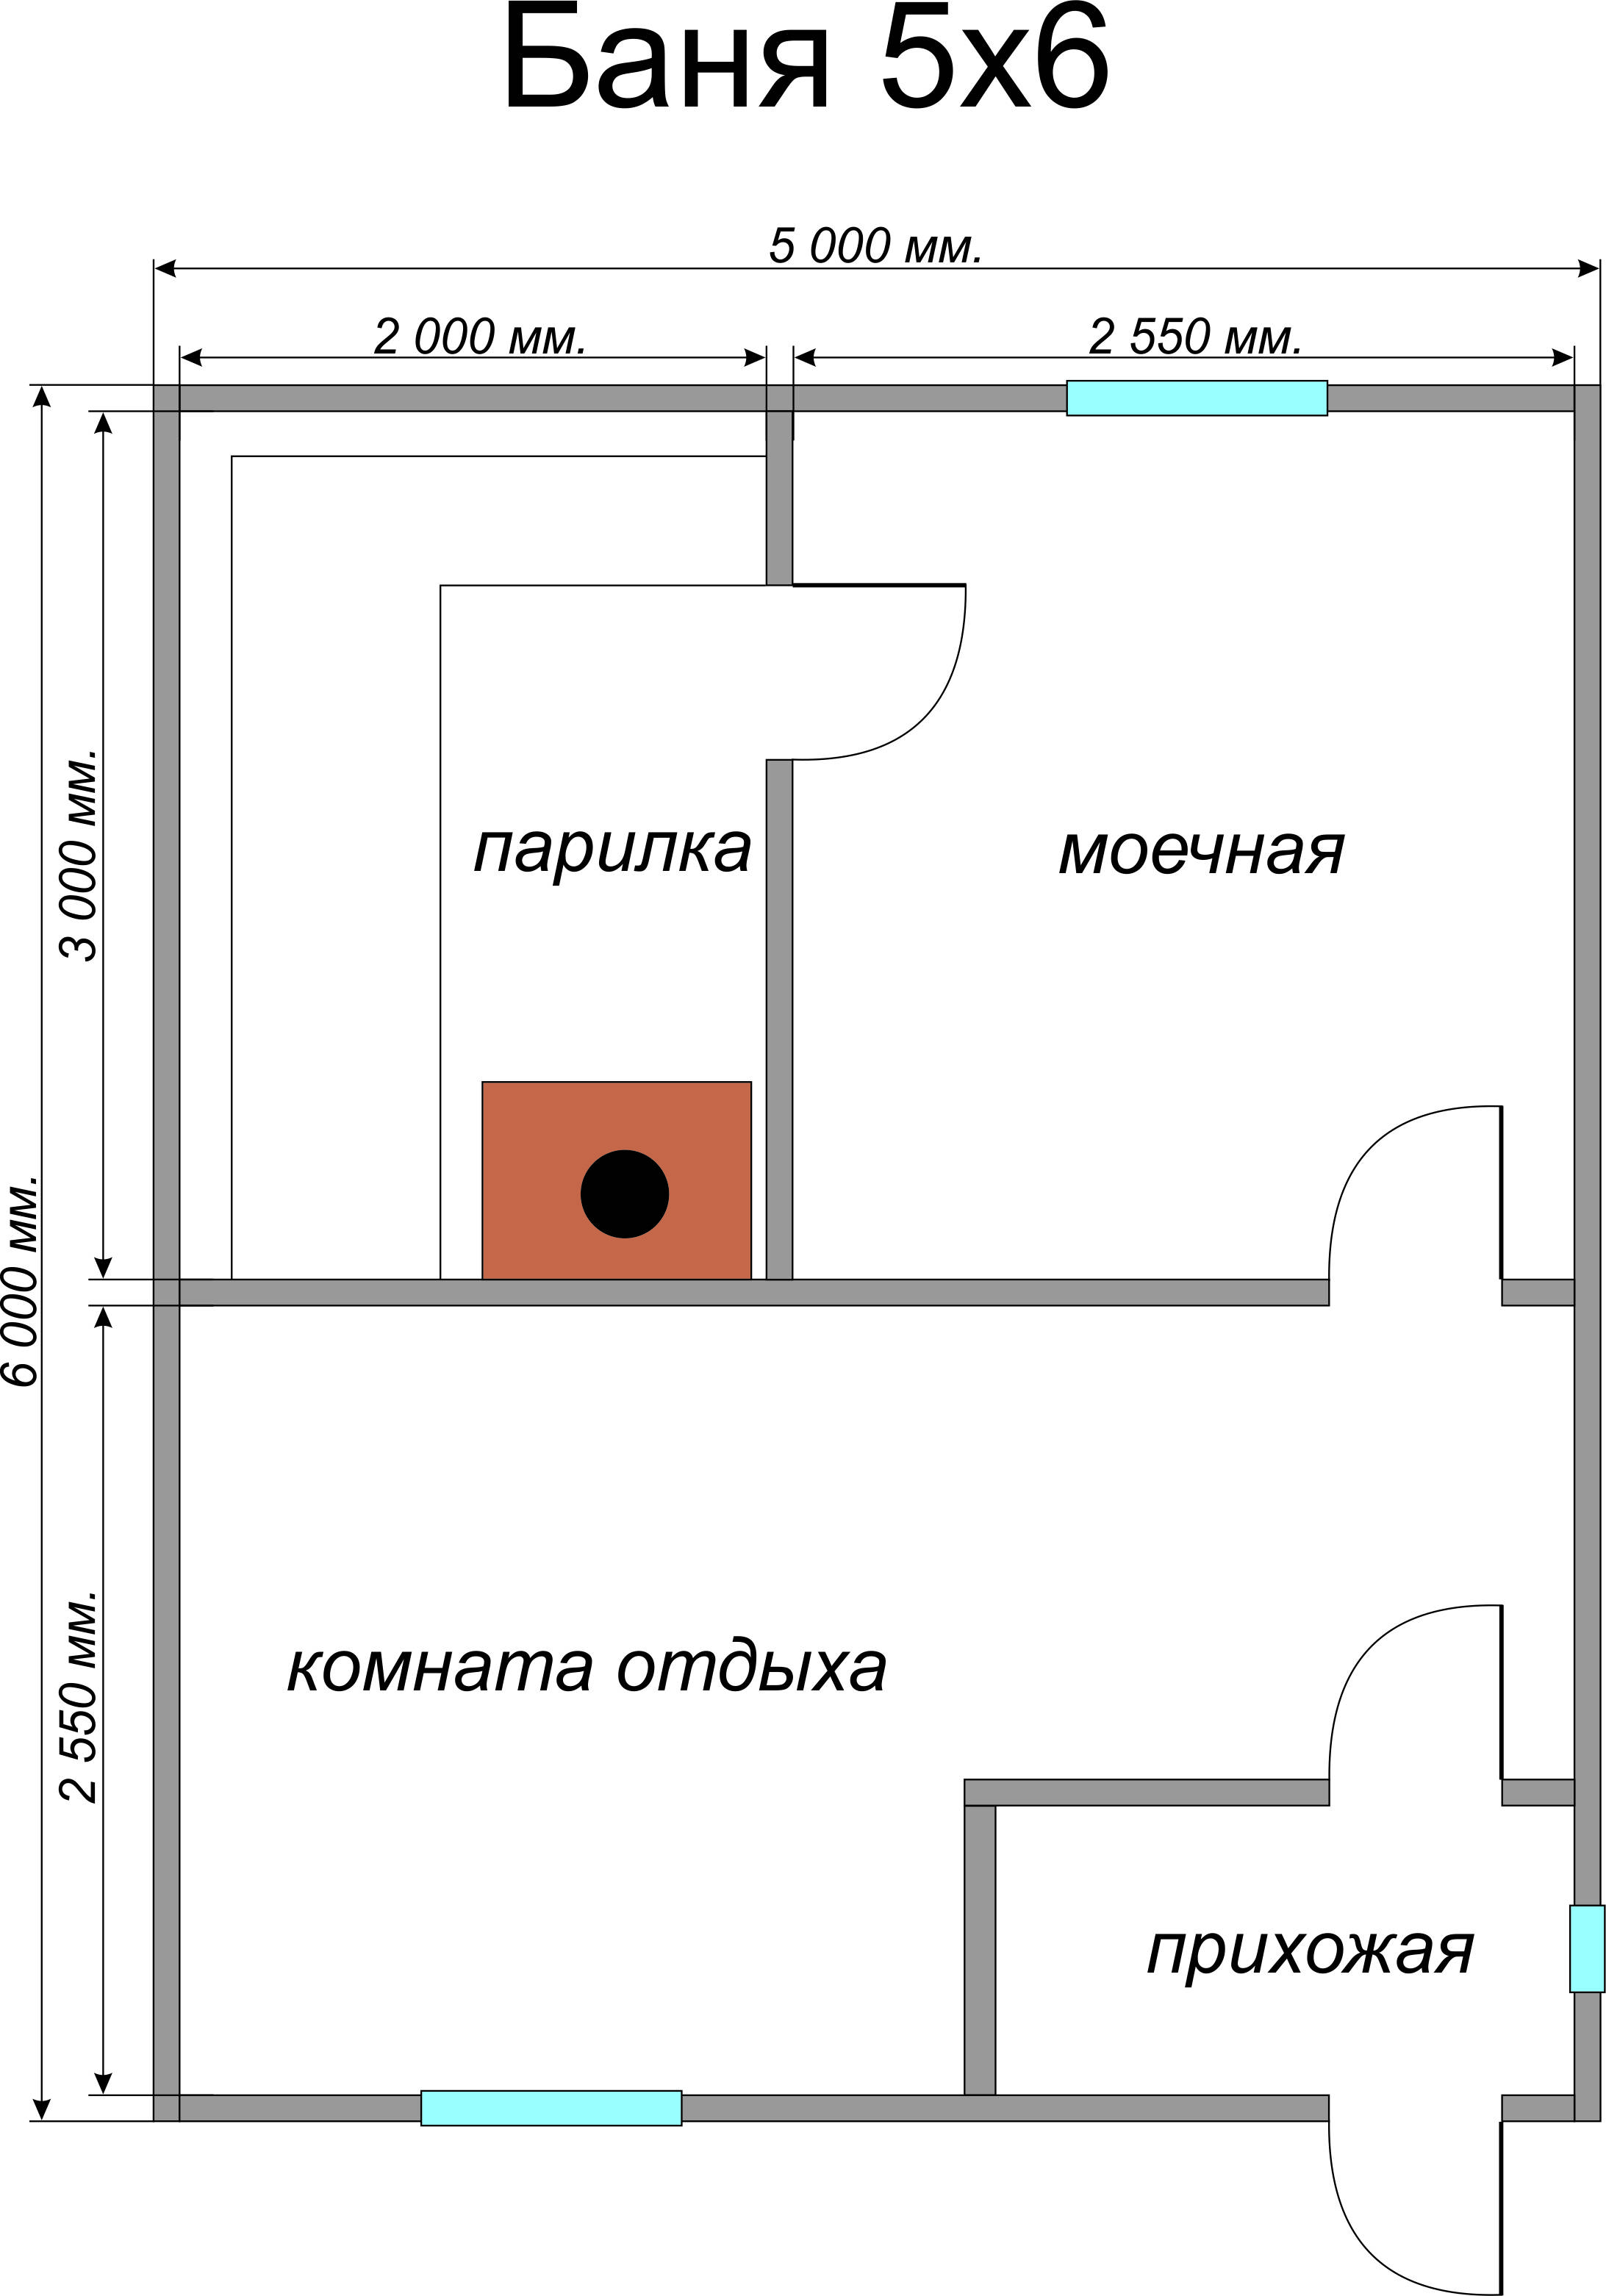 Баня размером 3 на 4: внутренняя планировка, фото